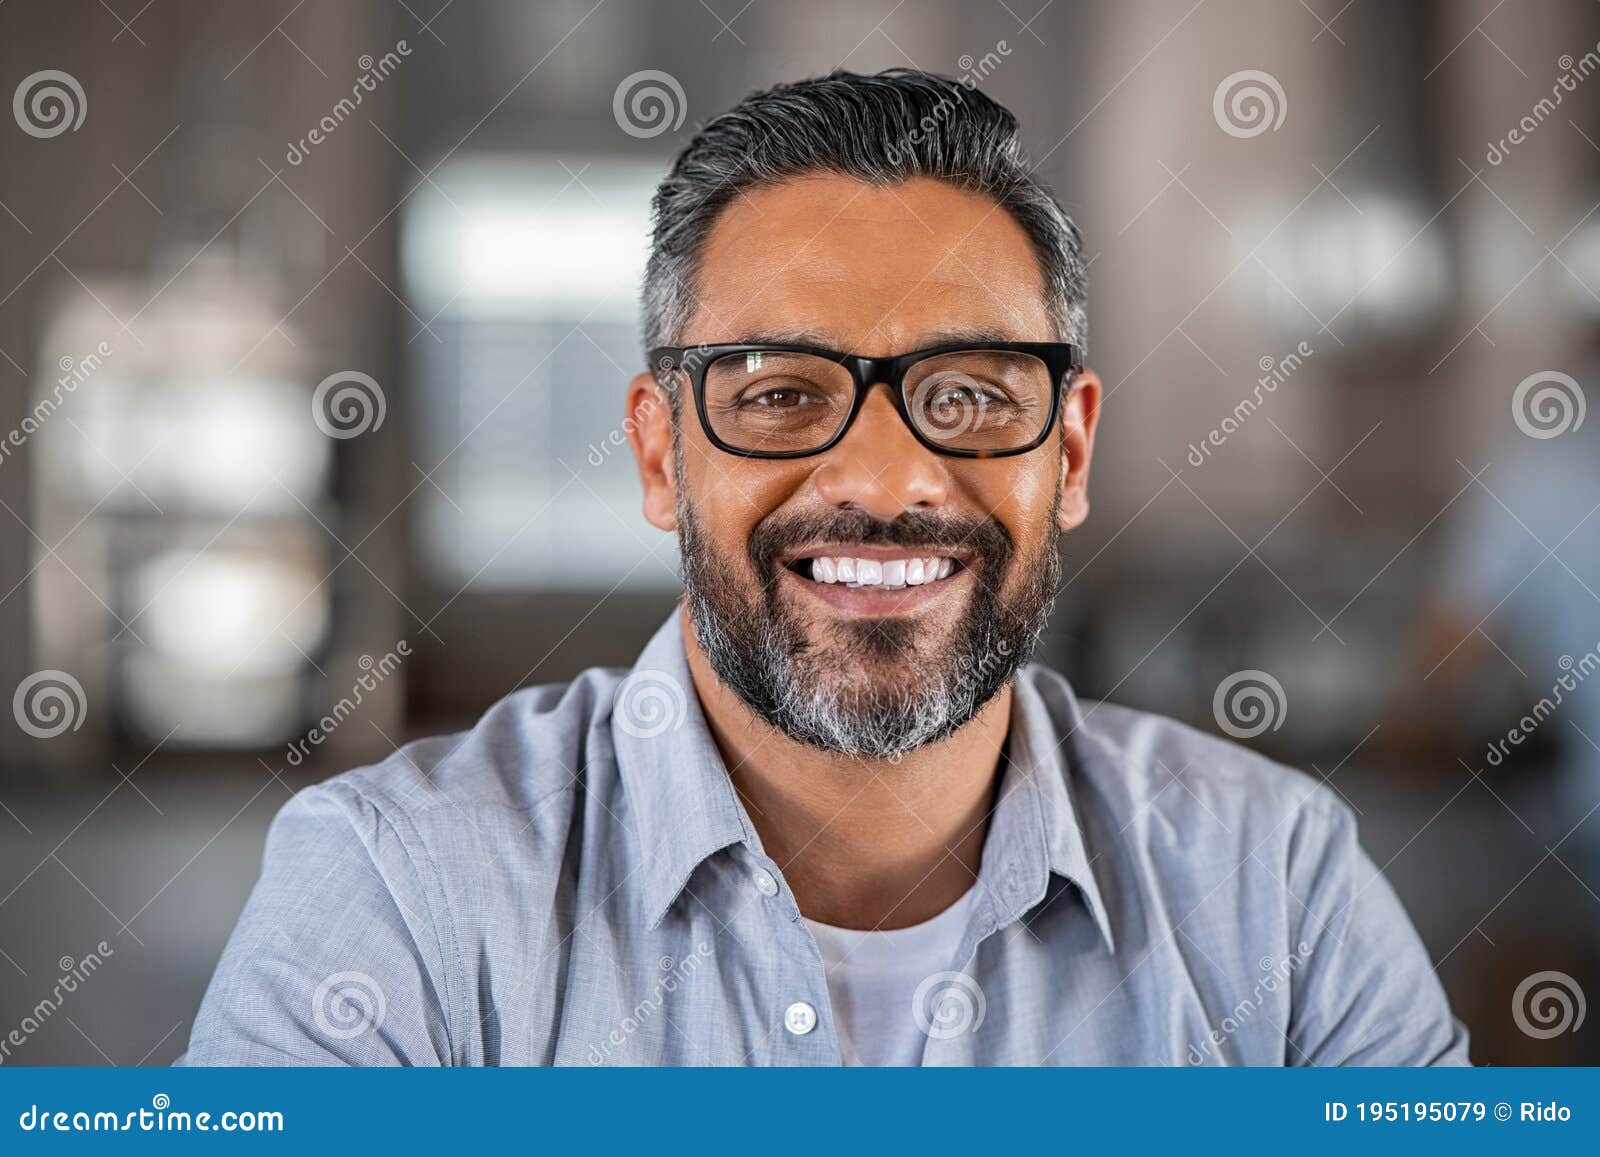 smiling indian man looking at camera